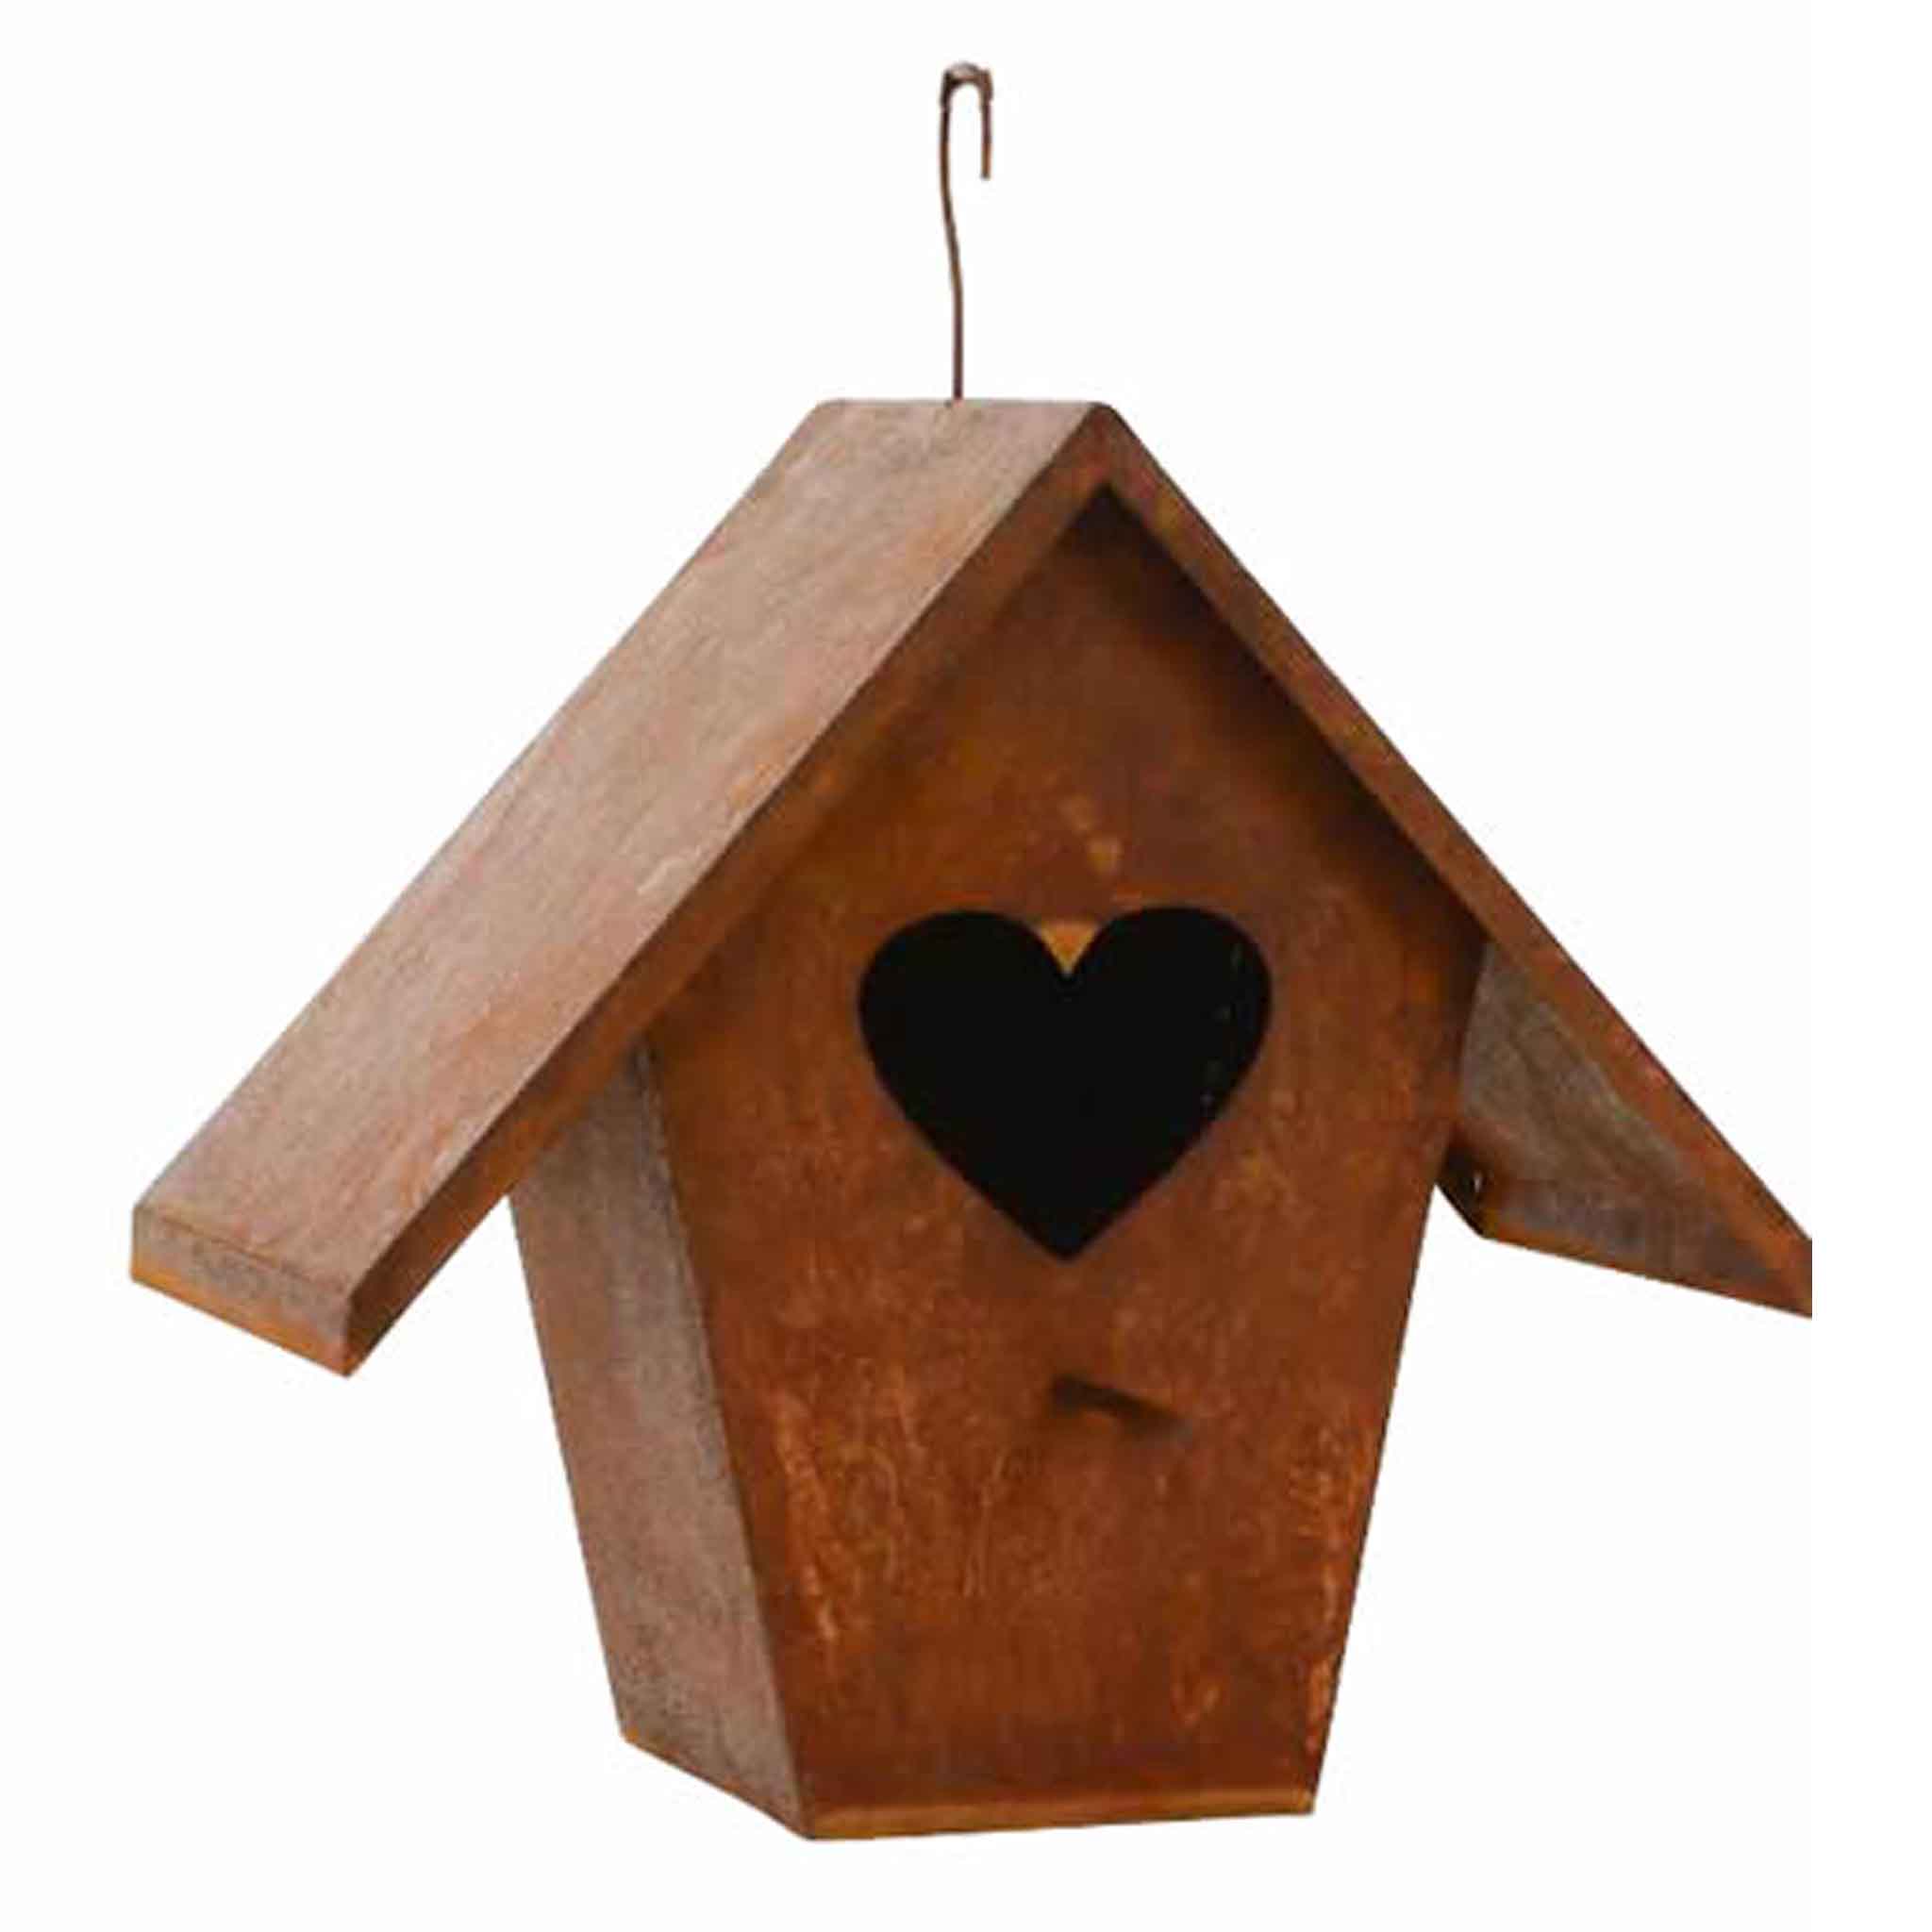 Robustes rostiges Metall-Vogelfutterhaus, ideal, um Vögeln einen gemütlichen Futterplatz in Ihrem Garten zu bieten